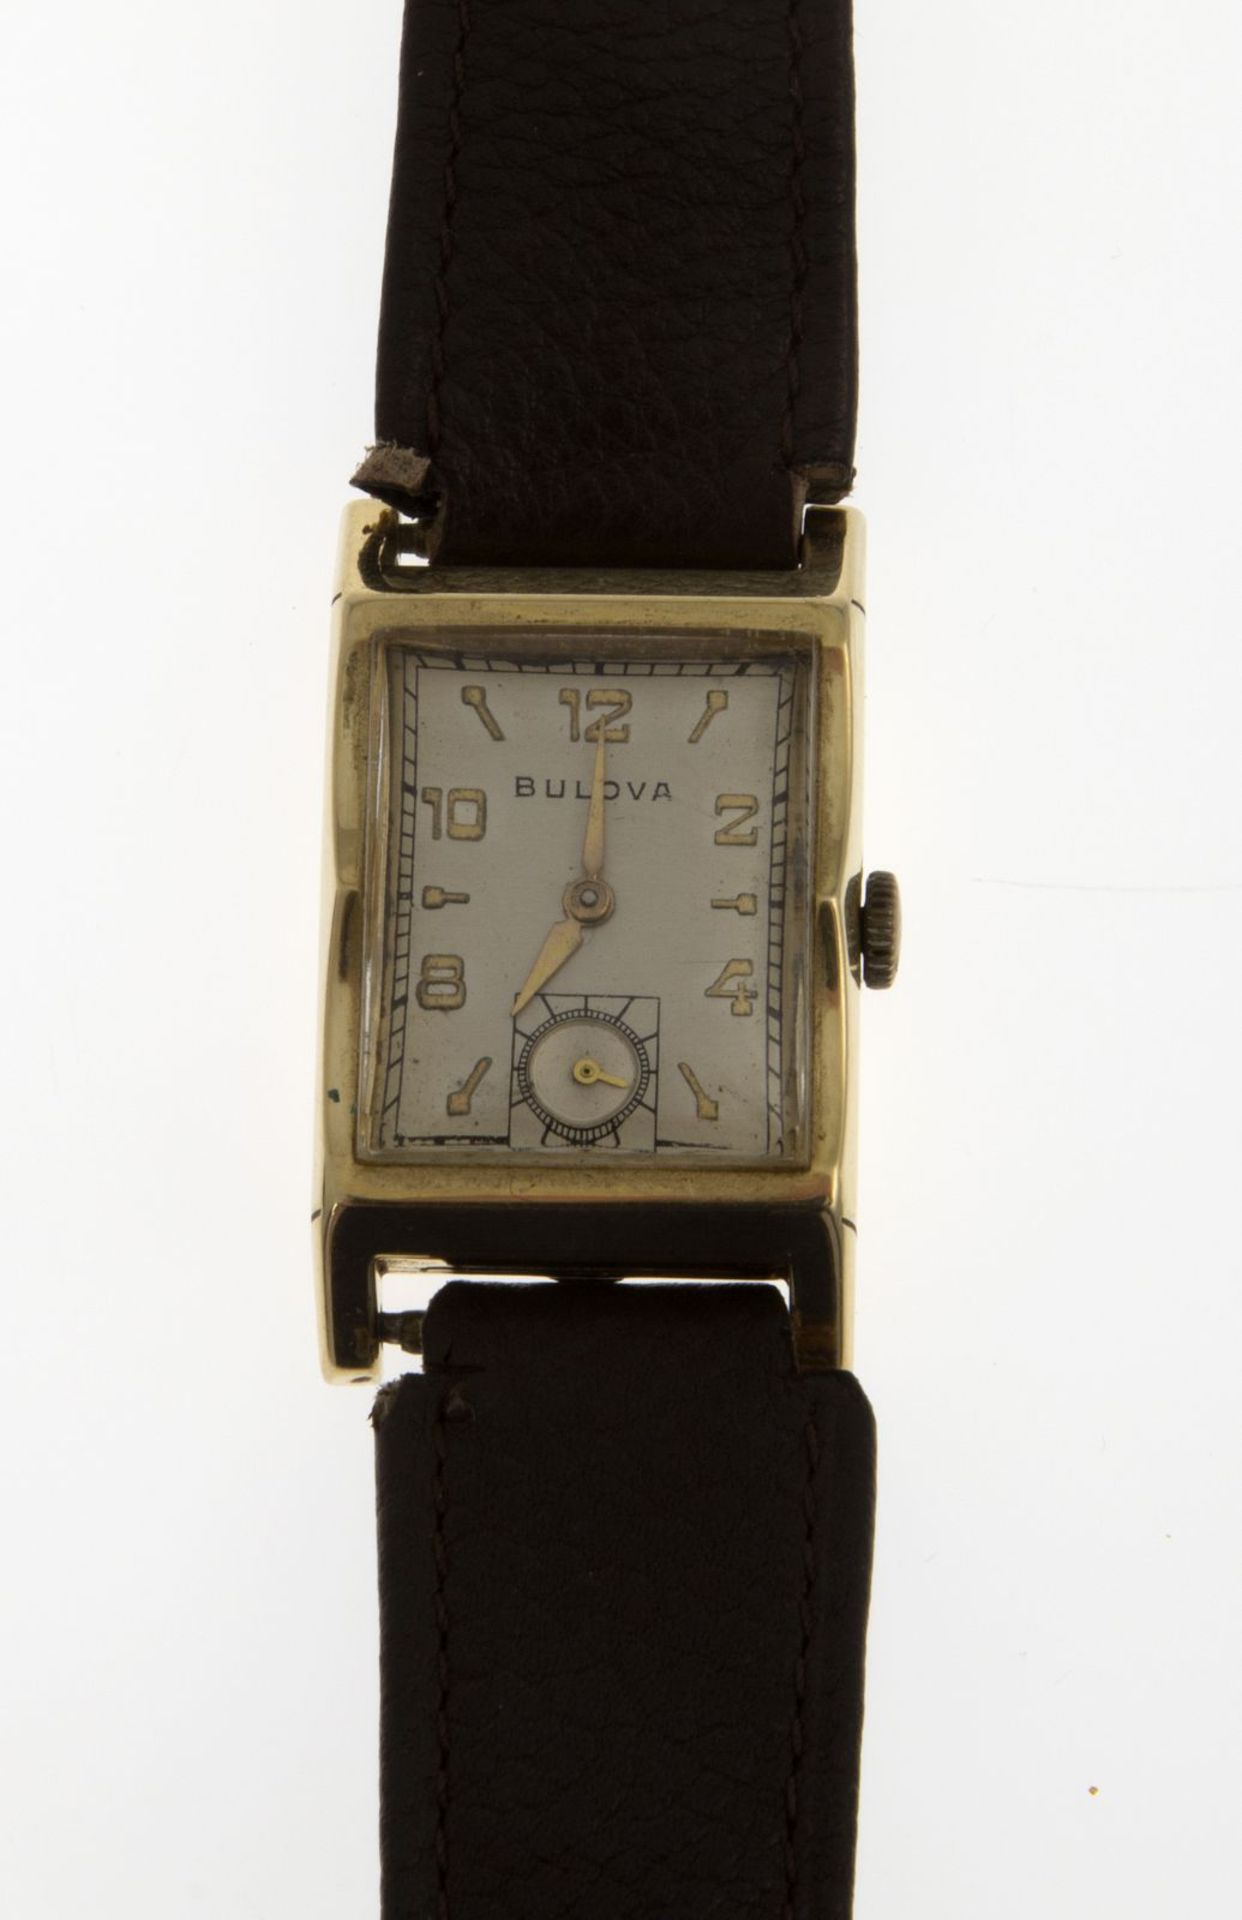 Bulova-ArmbanduhrRechteckiges Gehäuse aus Gelbgold 585. Plexiglas. Versilbertes Zifferblatt mit - Bild 3 aus 3